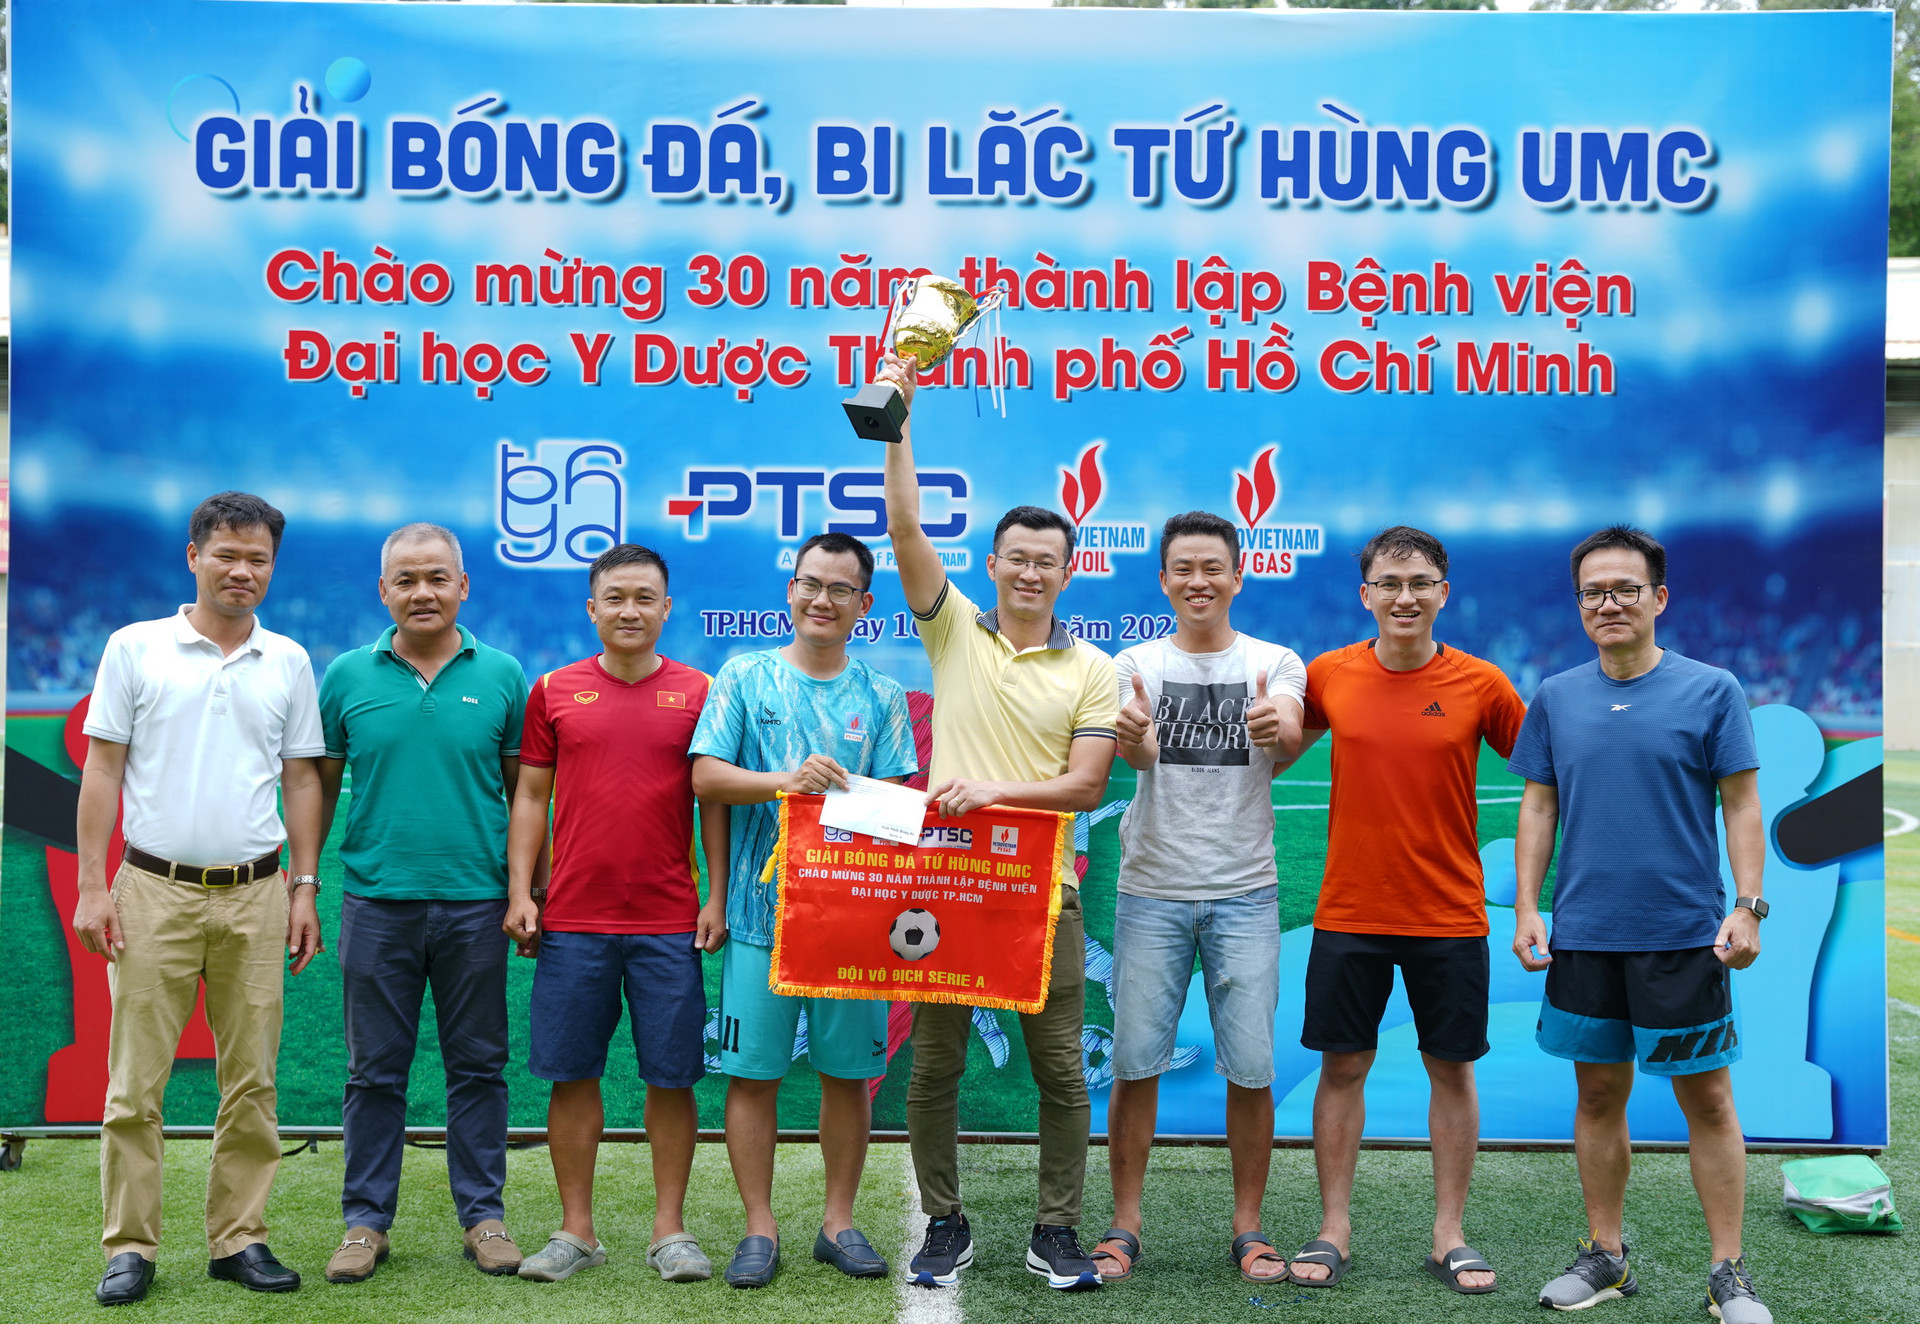 Đón nhận Cúp vô địch giải đấu, đội tuyển Cơ quan Điều hành PV GAS cũng nhận được những lời chúc mừng thân ái và đoàn kết.